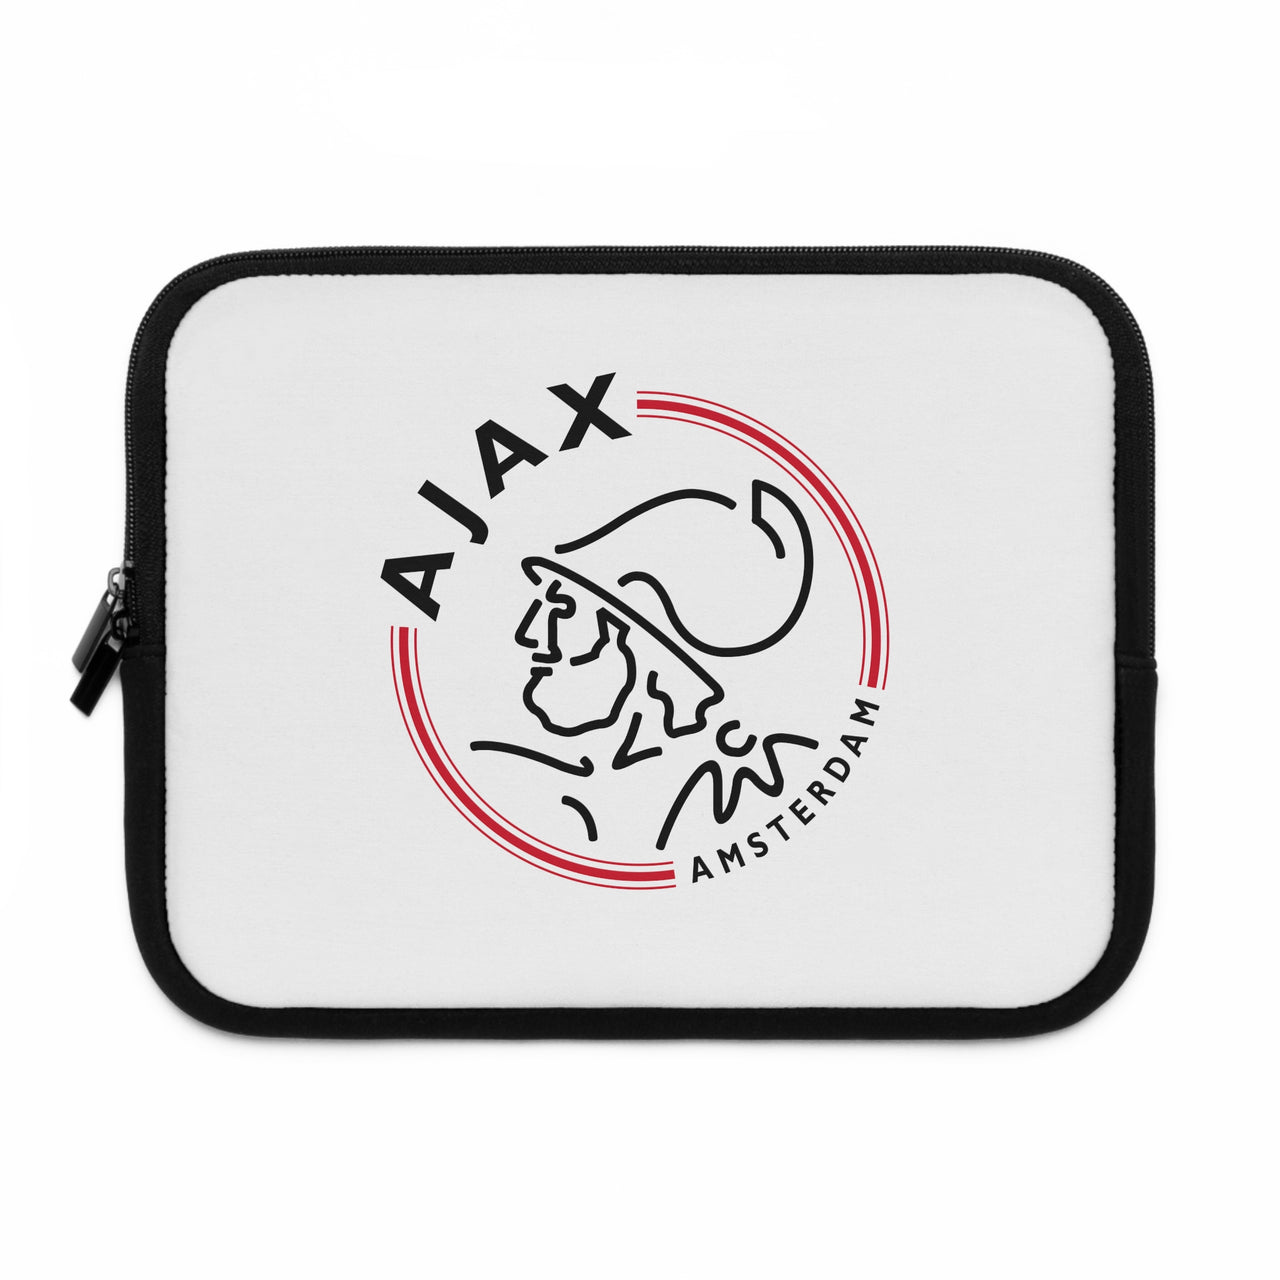 Ajax Laptop Sleeve